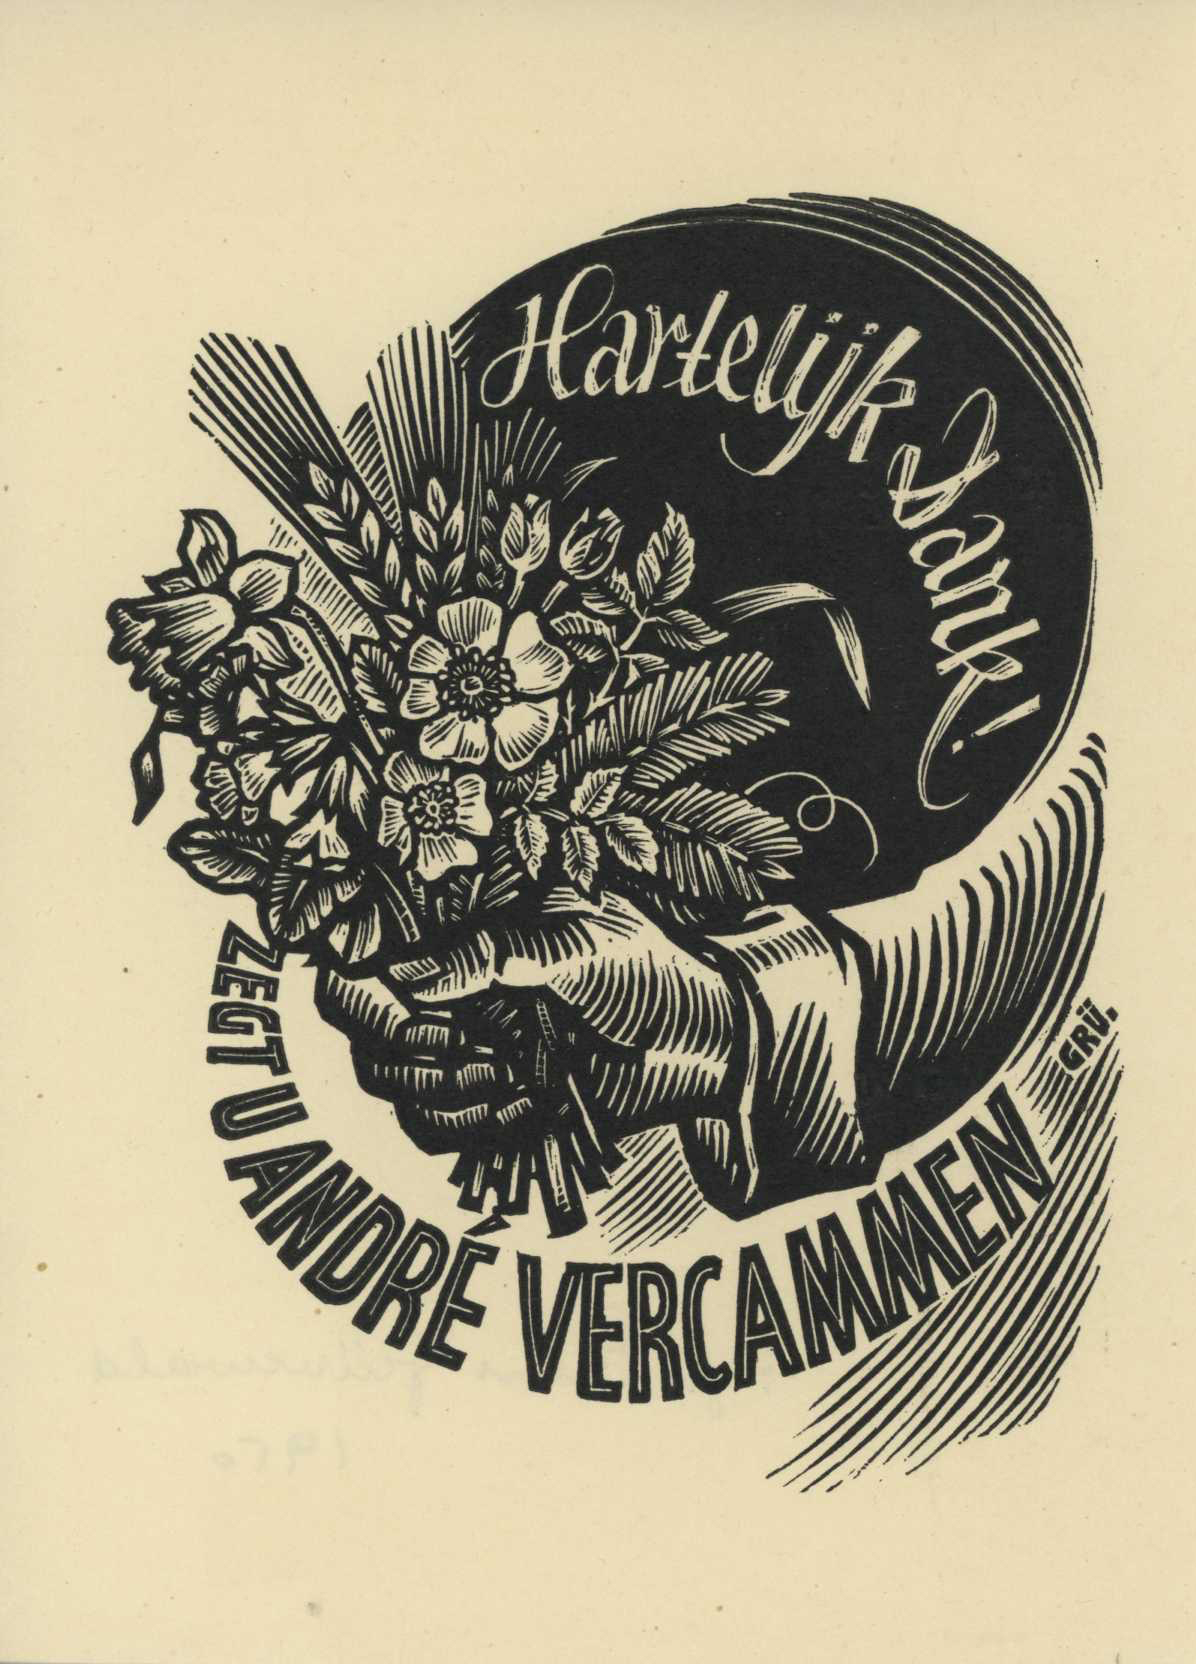 Featured image for “Hartelijk dank 1950”